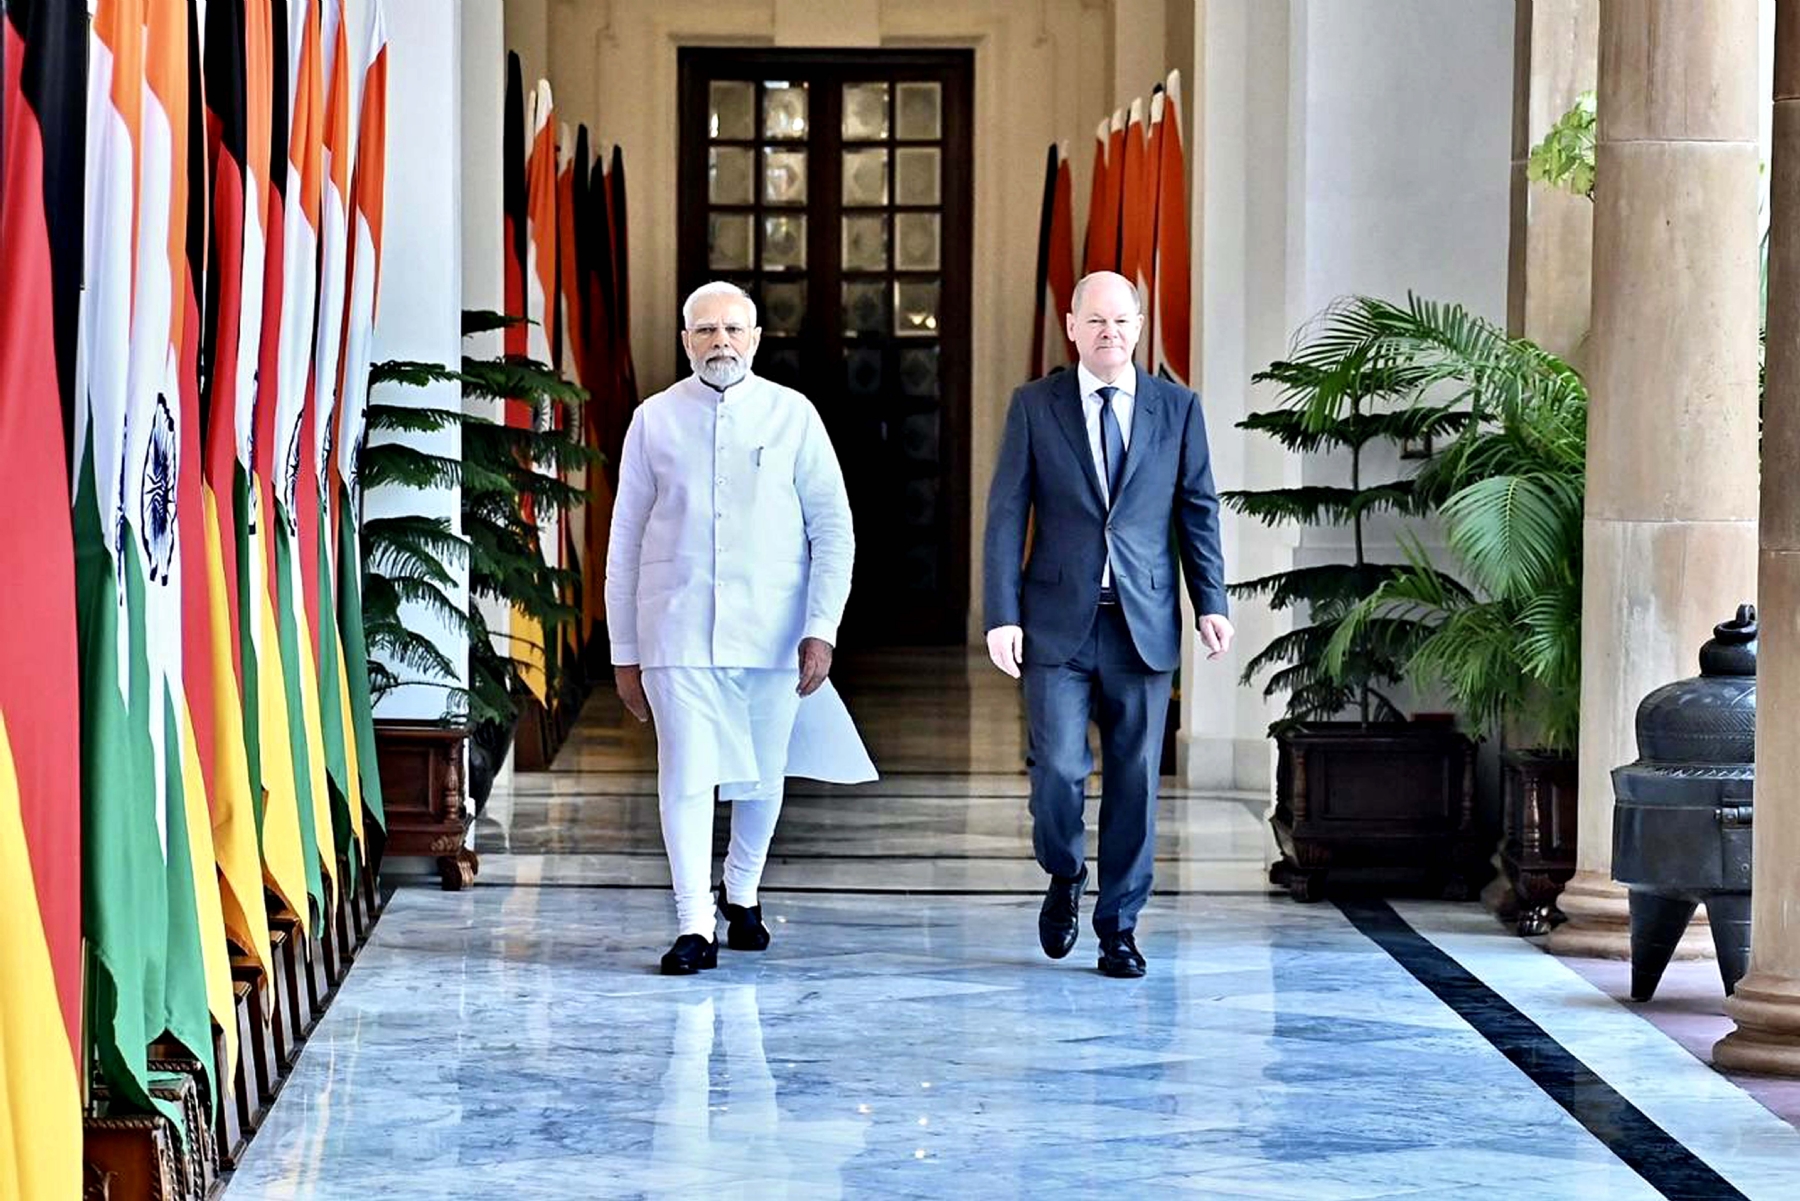 नई दिल्ली में शनिवार 25 फरवरी को हैदराबाद हाउस में प्रधानमंत्री नरेन्द्र मोदी ने जर्मनी चांसलर ओलाफ शोल्ज का स्वागत किया। हिन्दुस्थान समाचार/ फोटो गणेश बिष्ट 